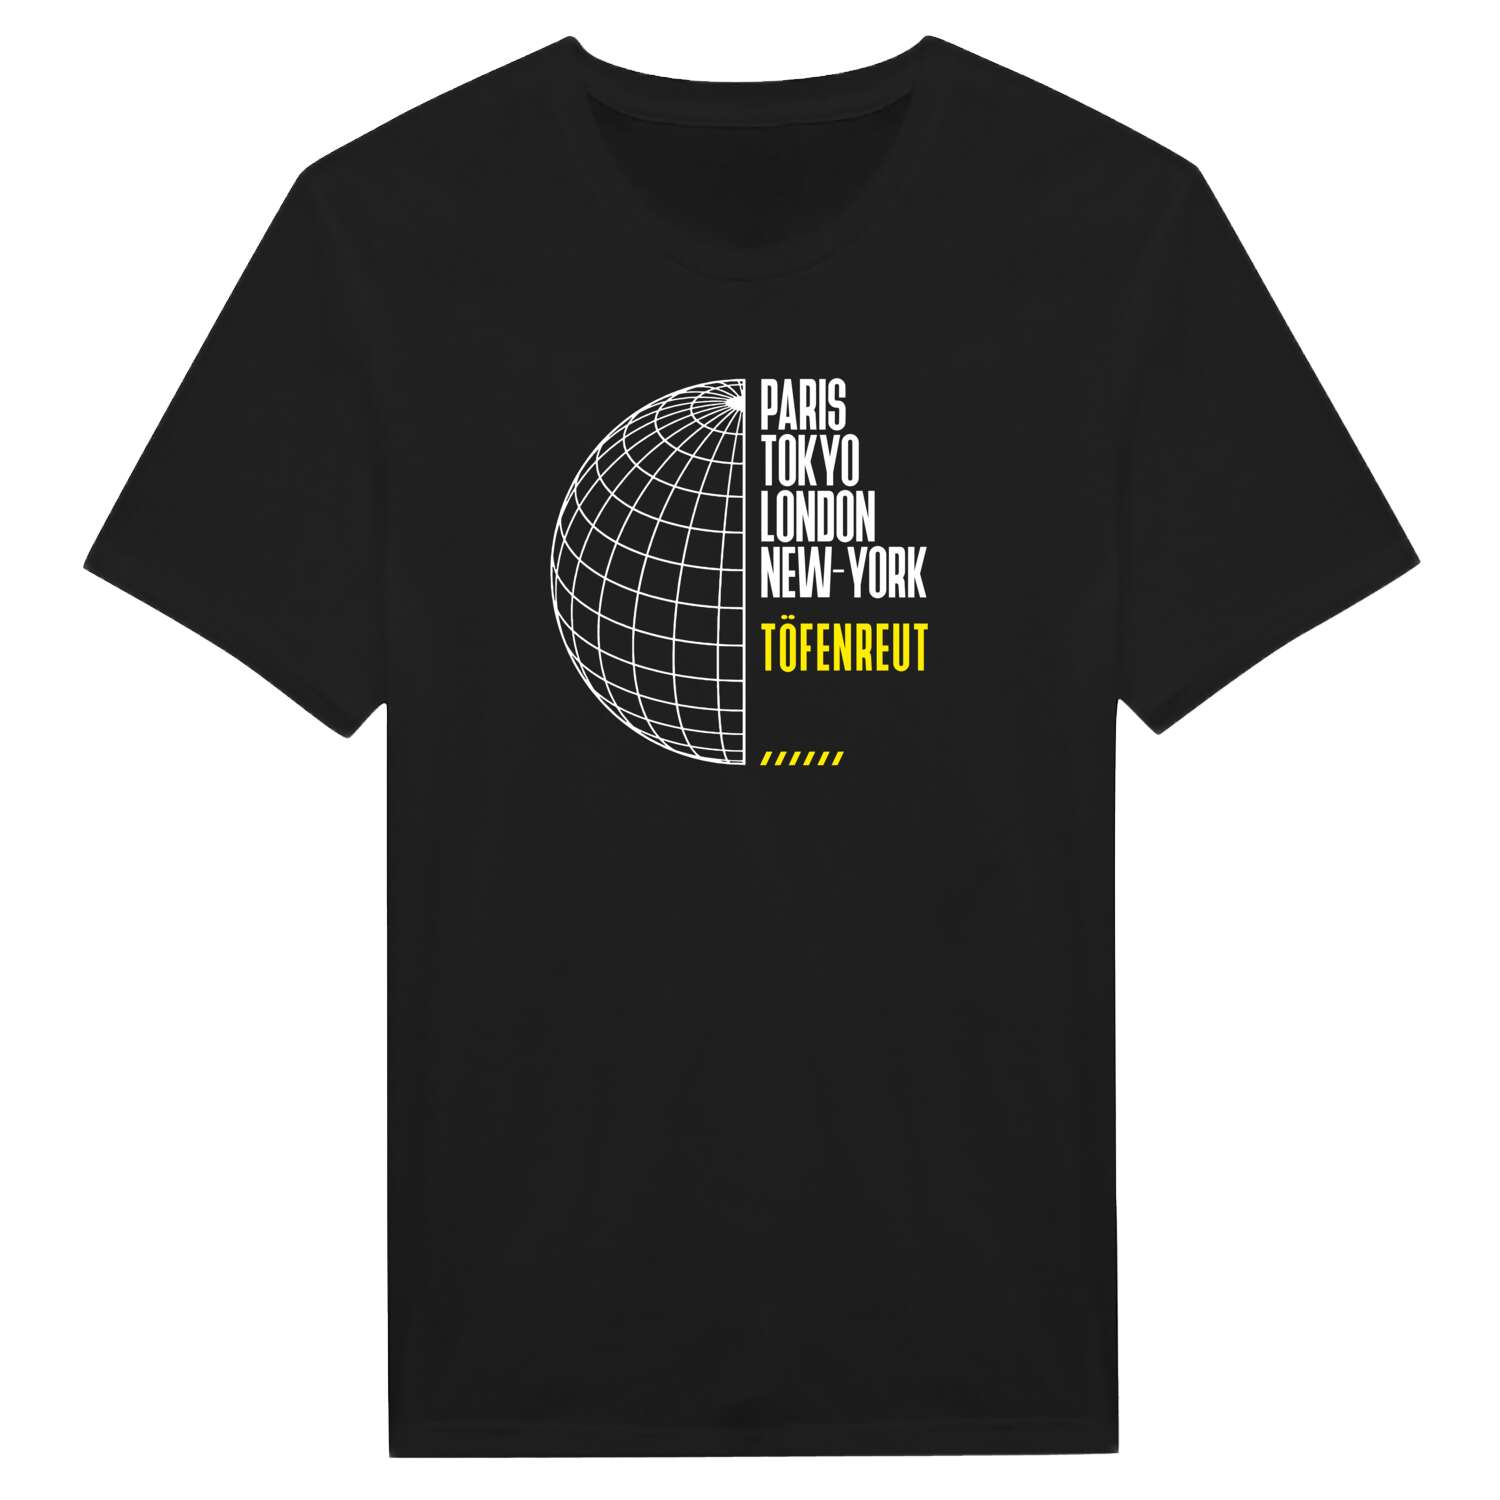 Töfenreut T-Shirt »Paris Tokyo London«